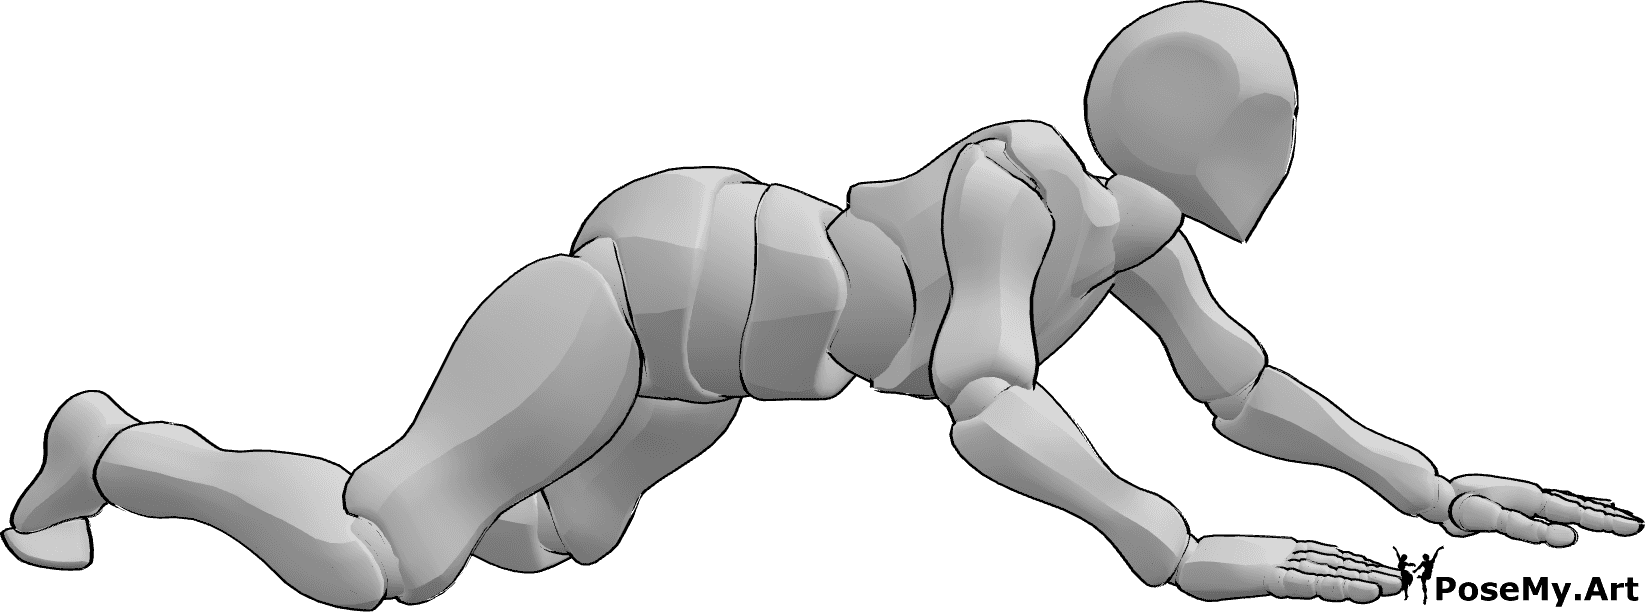 Posen-Referenz- Männliche kriechende Knie Pose - Das Männchen krabbelt auf den Knien, wobei es seine Handflächen und Knie zum Krabbeln benutzt